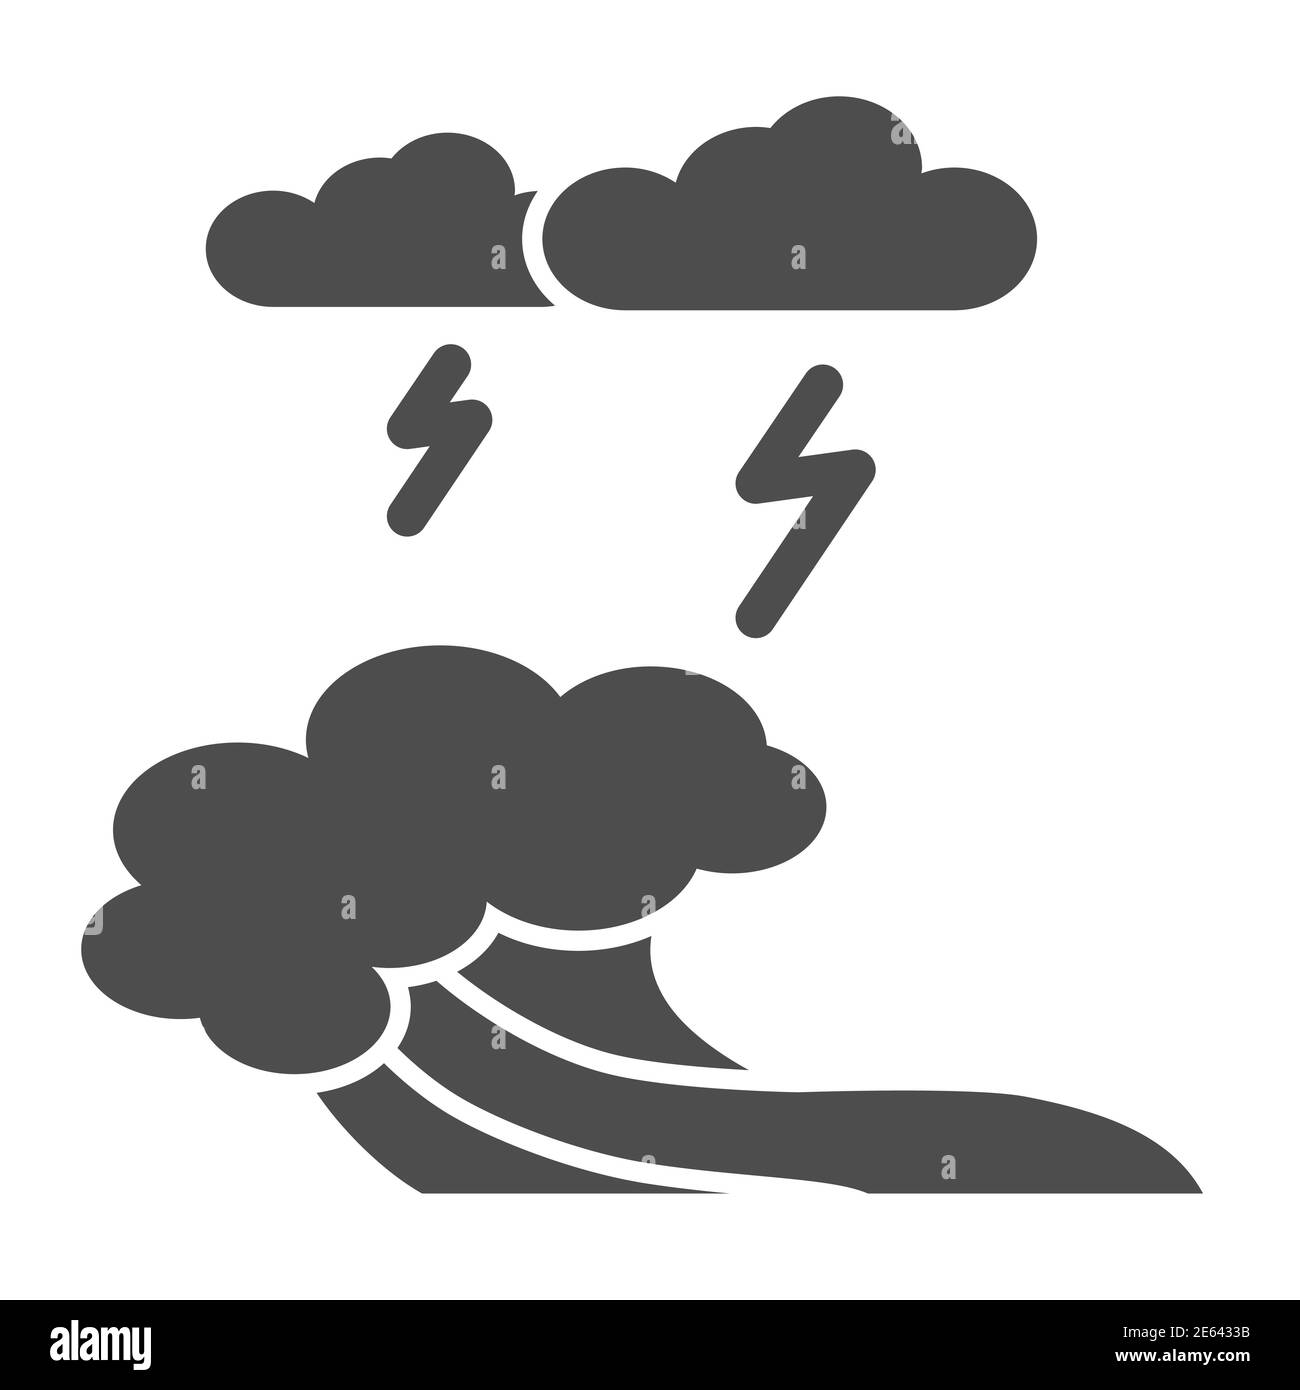 Meereswellen, Blitz und Wolken solide Ikone, nautisches Konzept, Ozean Sturm Zeichen auf weißem Hintergrund, große Ozean brechende Welle und Blitzwolken Stock Vektor